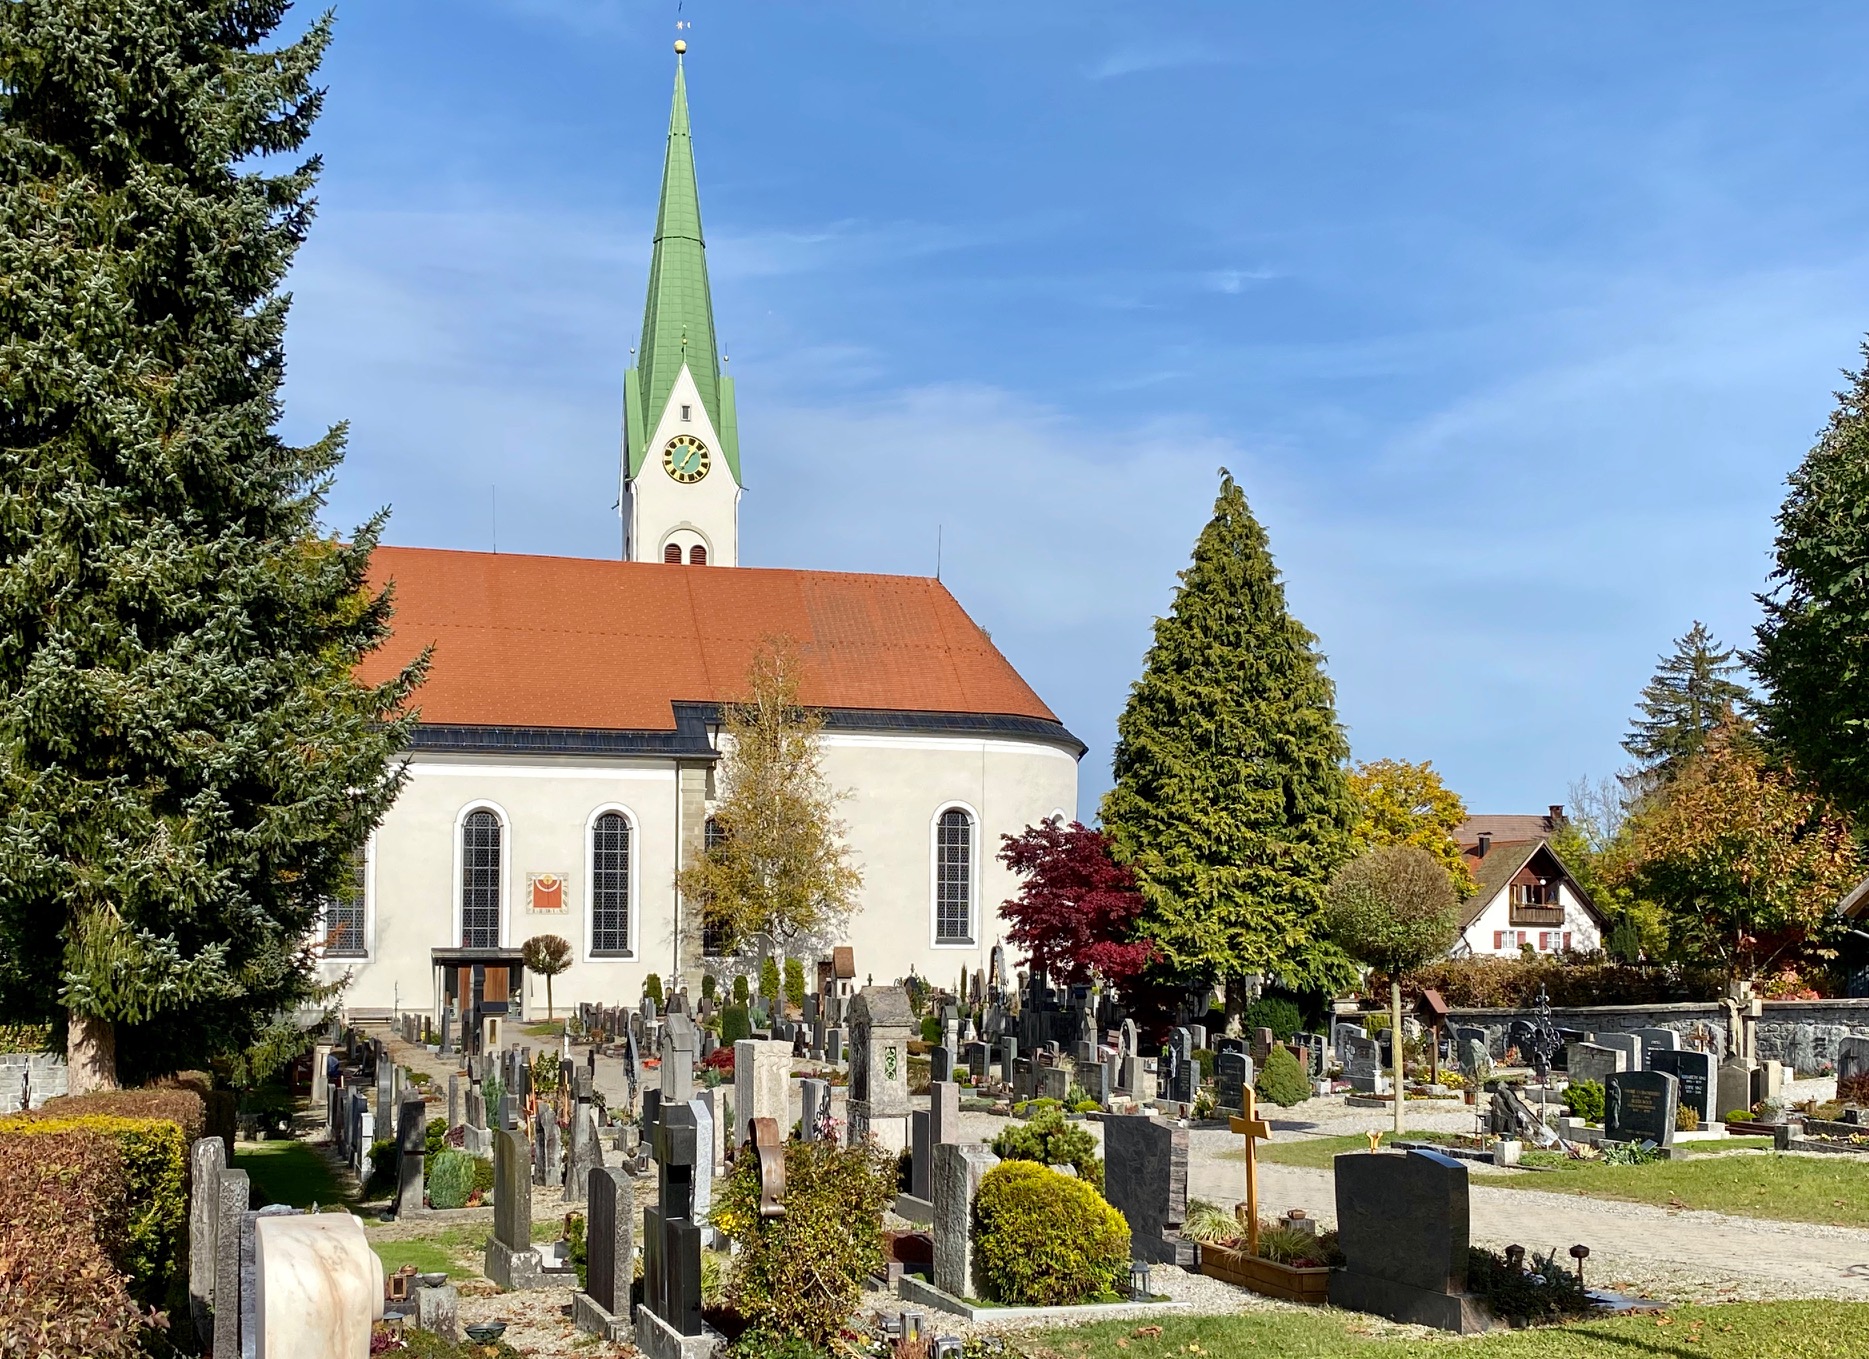  Kirche Weiler im Allgäu mit Blick von Friedhof aus auf Kirche - das Bild wird mit Klick vergrößert 